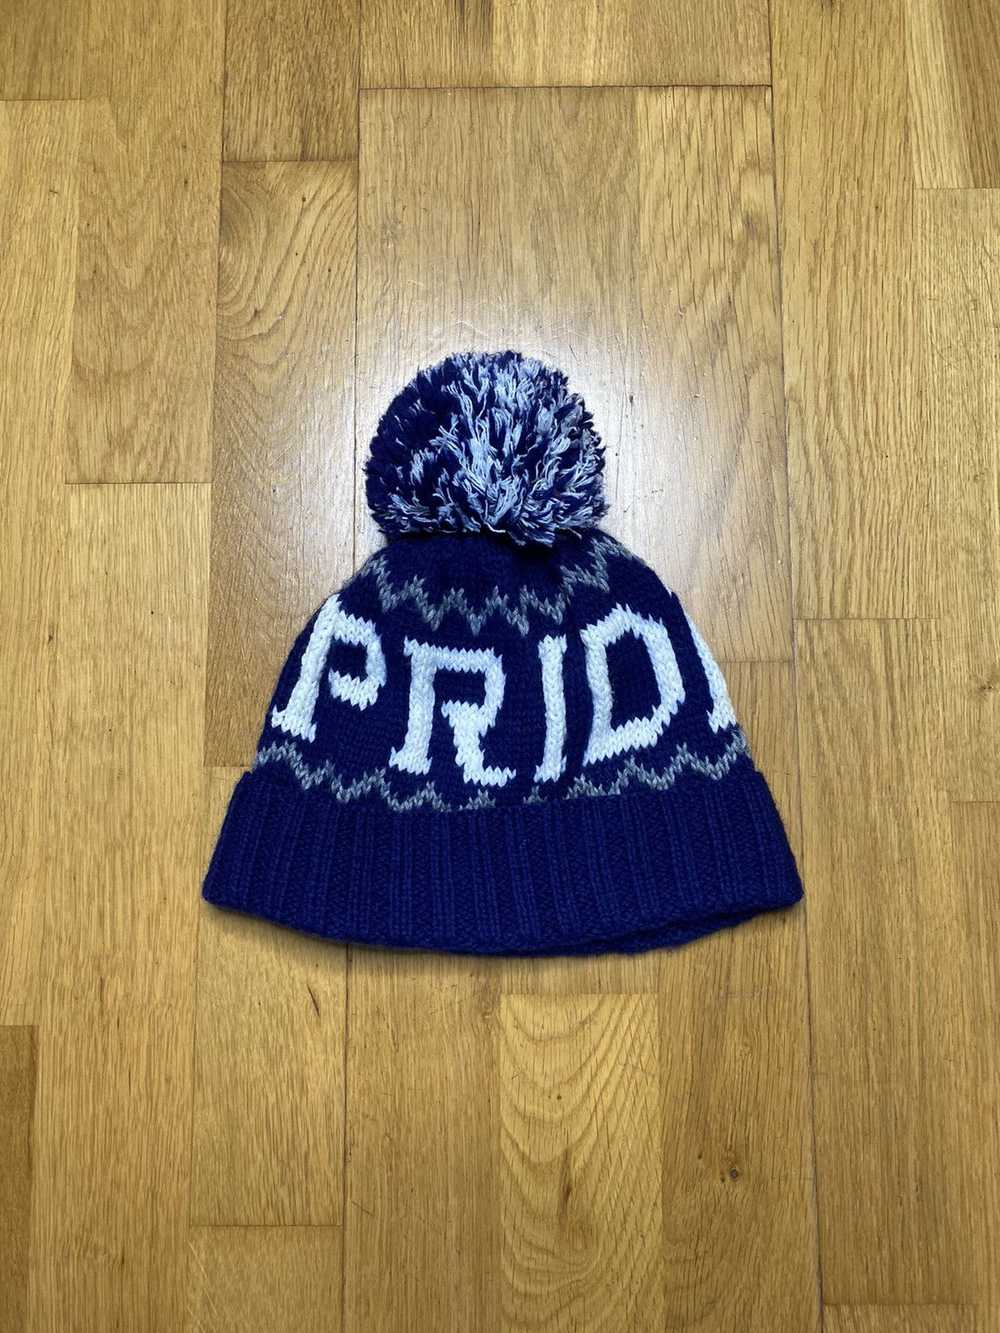 Handmade × Japanese Brand × Streetwear Pride Hat … - image 1